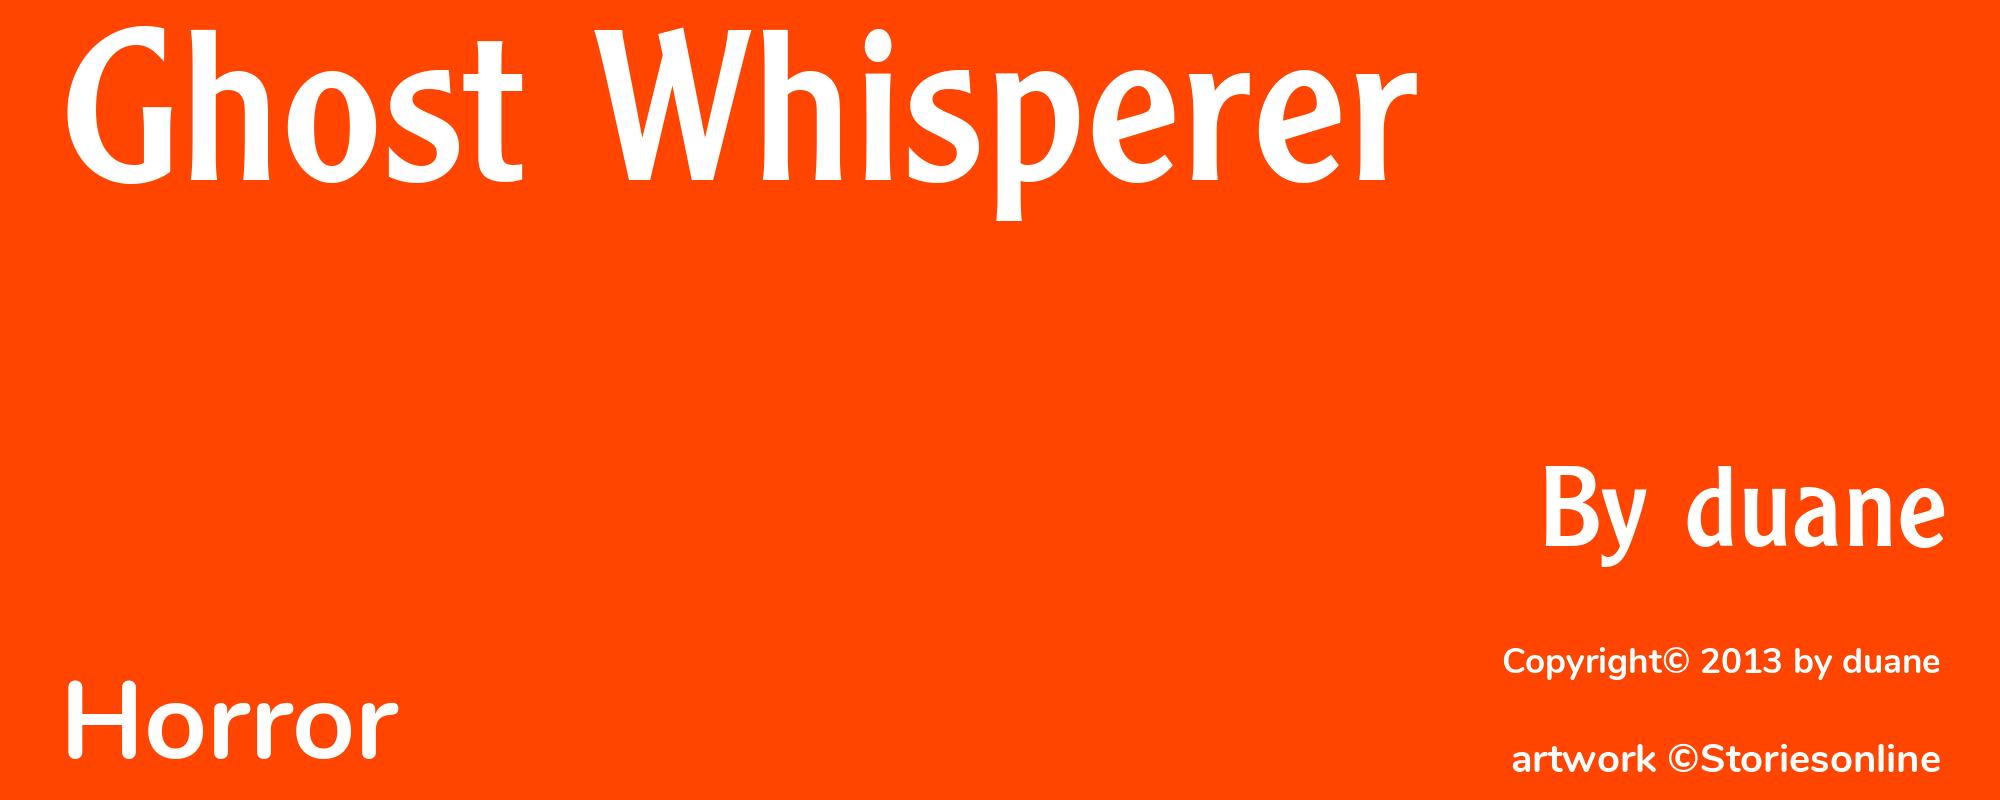 Ghost Whisperer - Cover